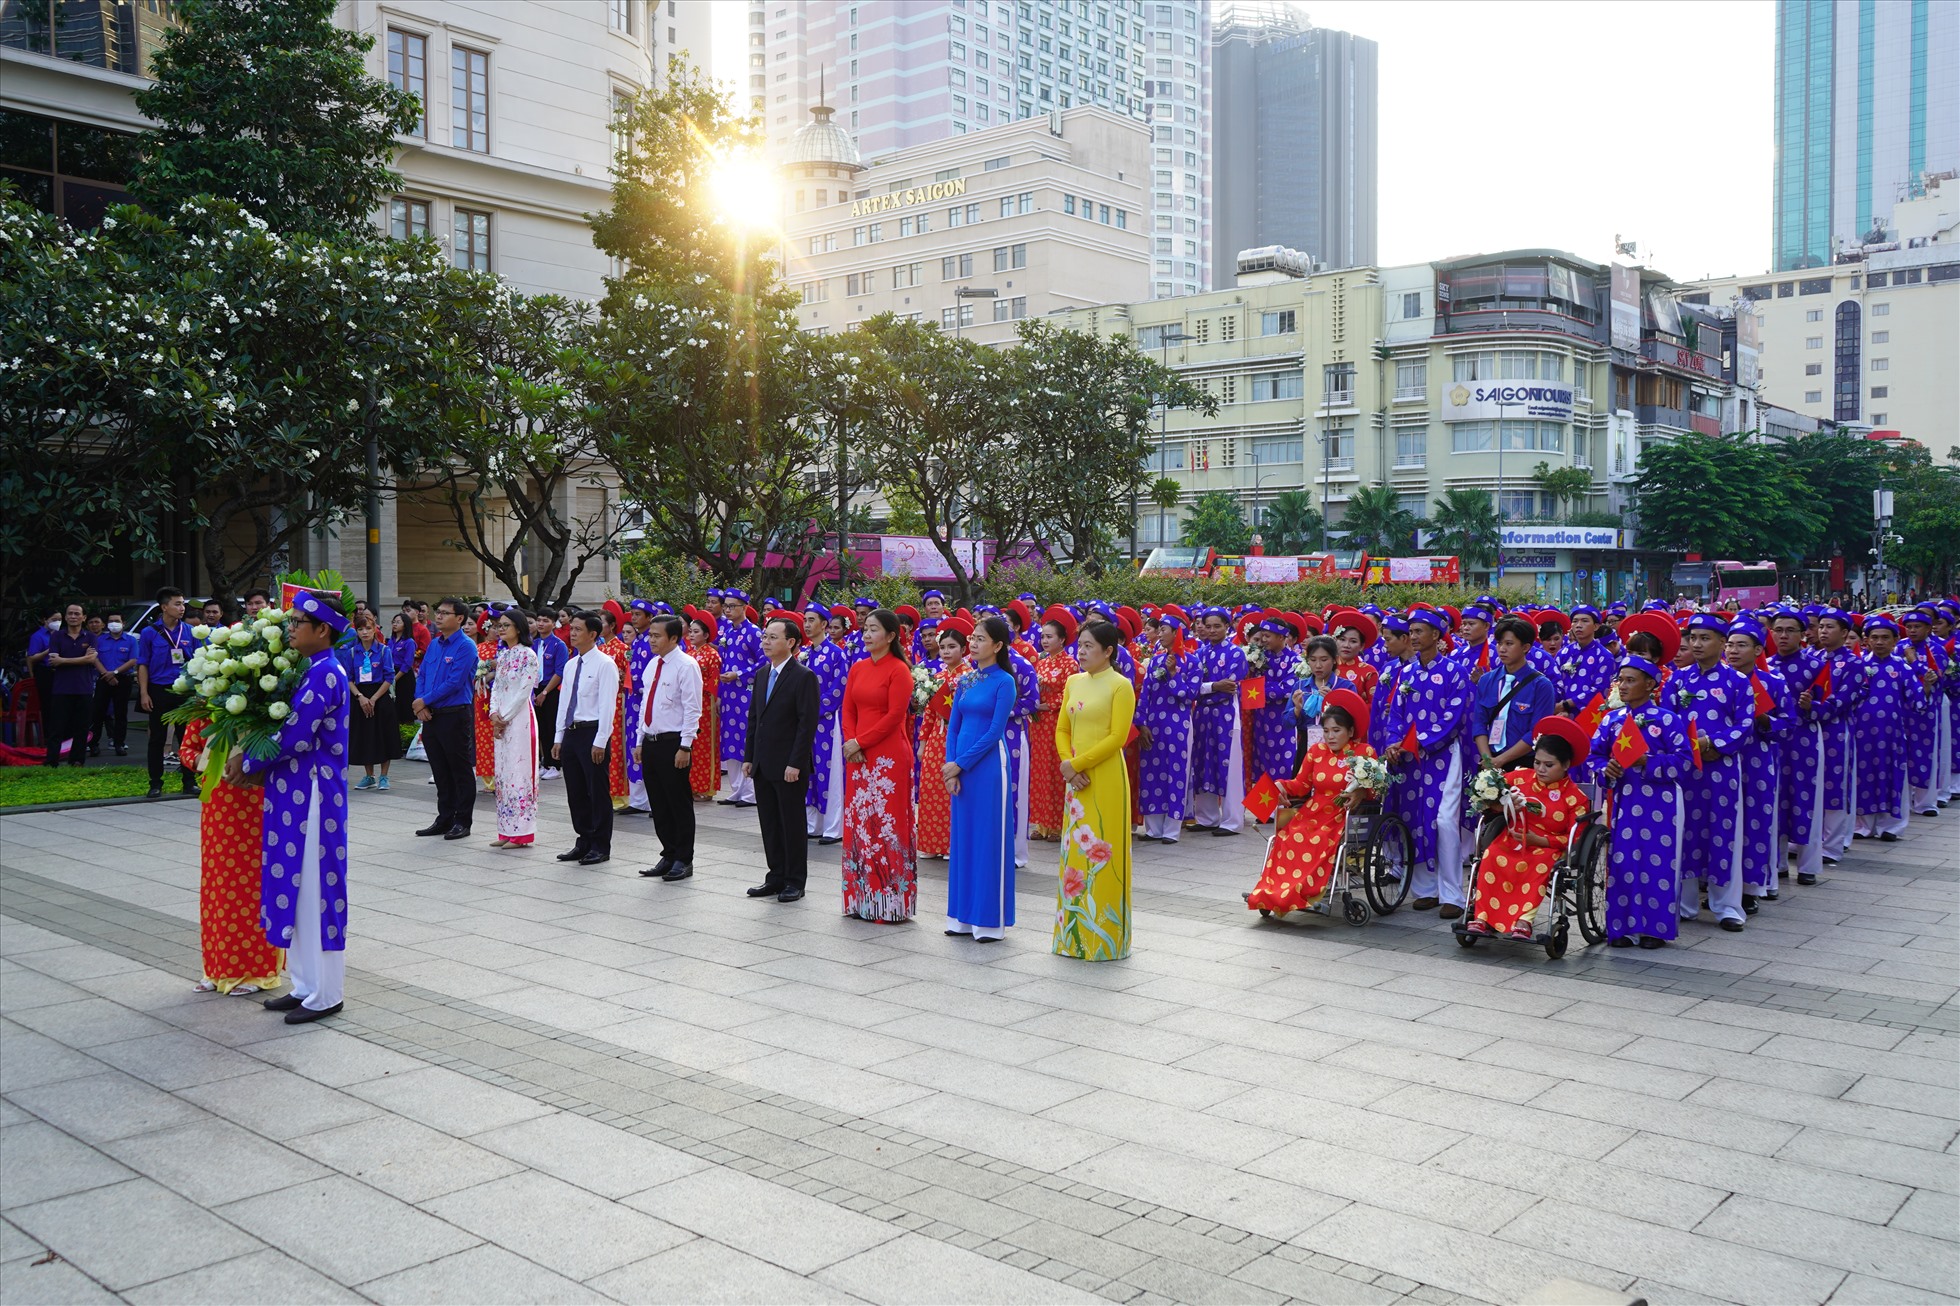 100 cặp đôi đã cùng dâng hoa tại tượng đài Chủ tịch Hồ Chí Minh, đây là chương trình mở đầu của lễ cưới tập thể trong ngày 2.9.